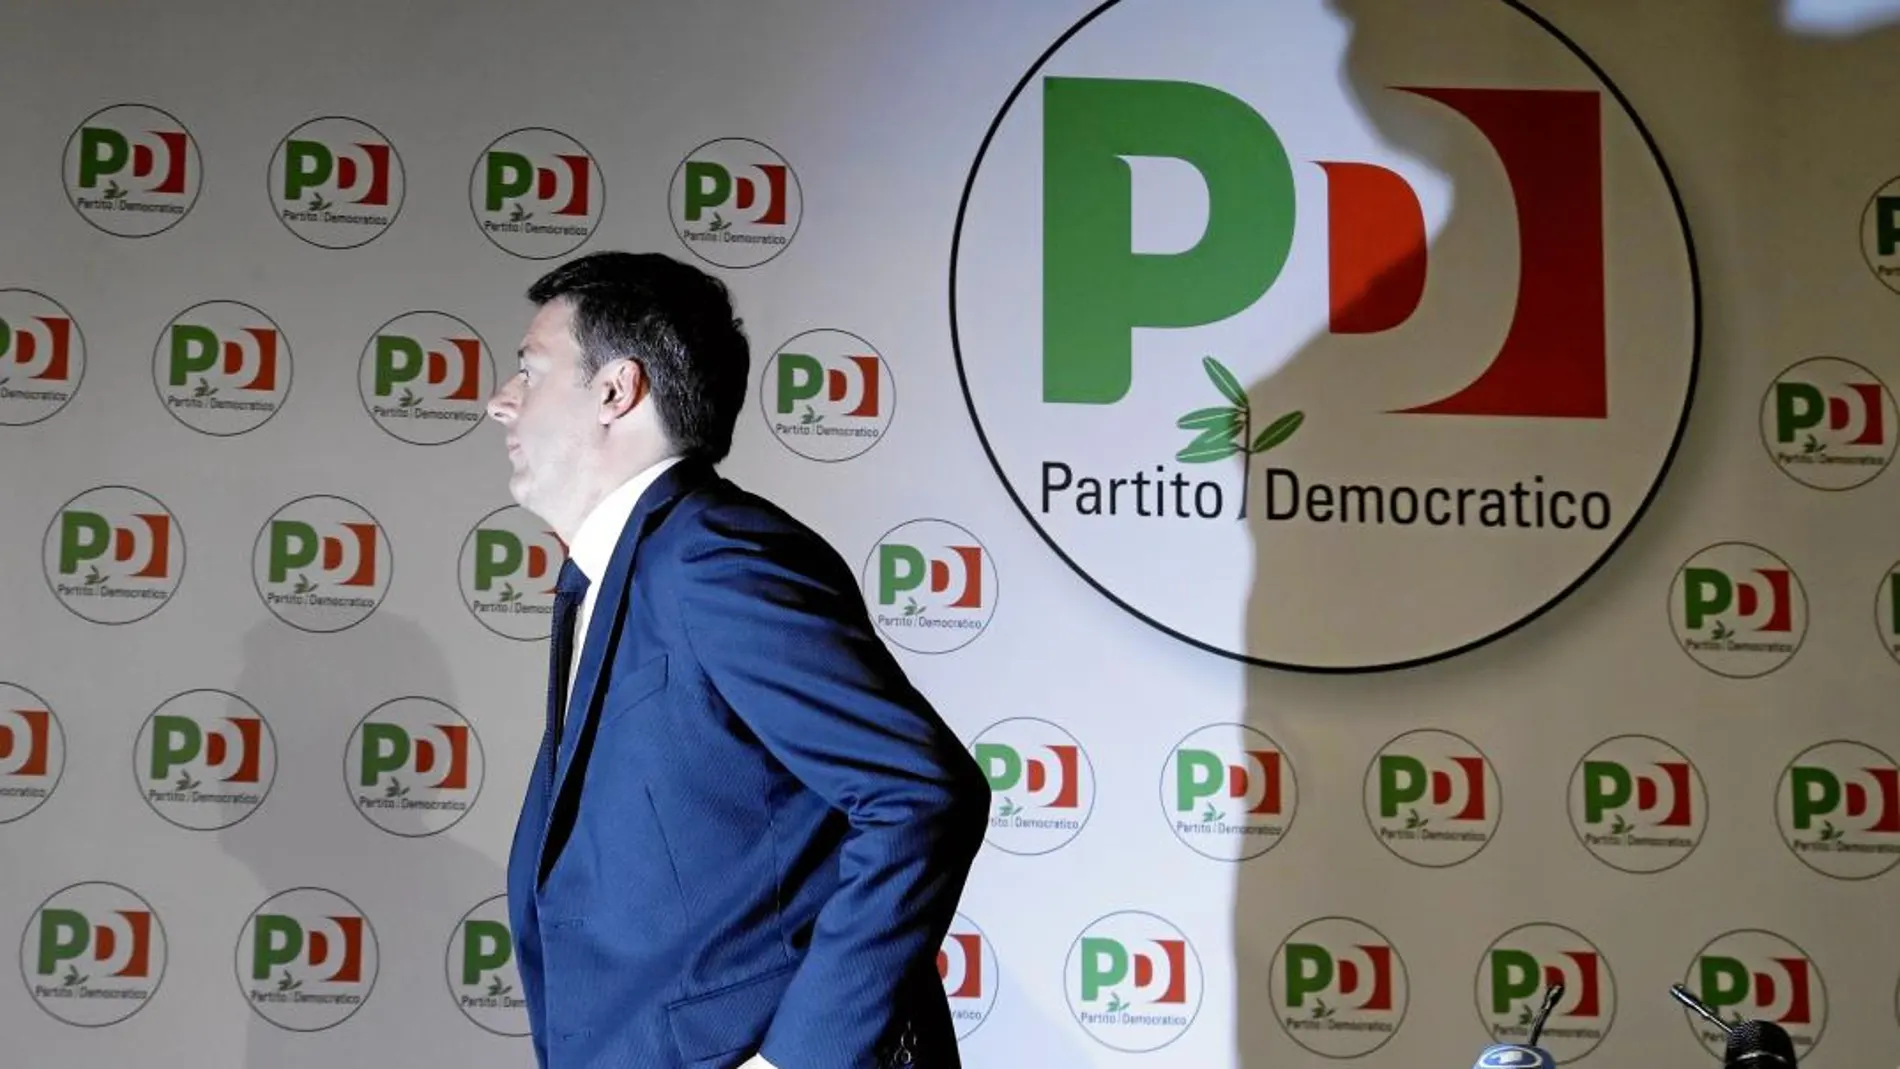 El ex primer ministro Matteo Renzi presentó ayer su dimisión como secretario general del Partido Democrático tras la debacle electoral de la izquierda italiana